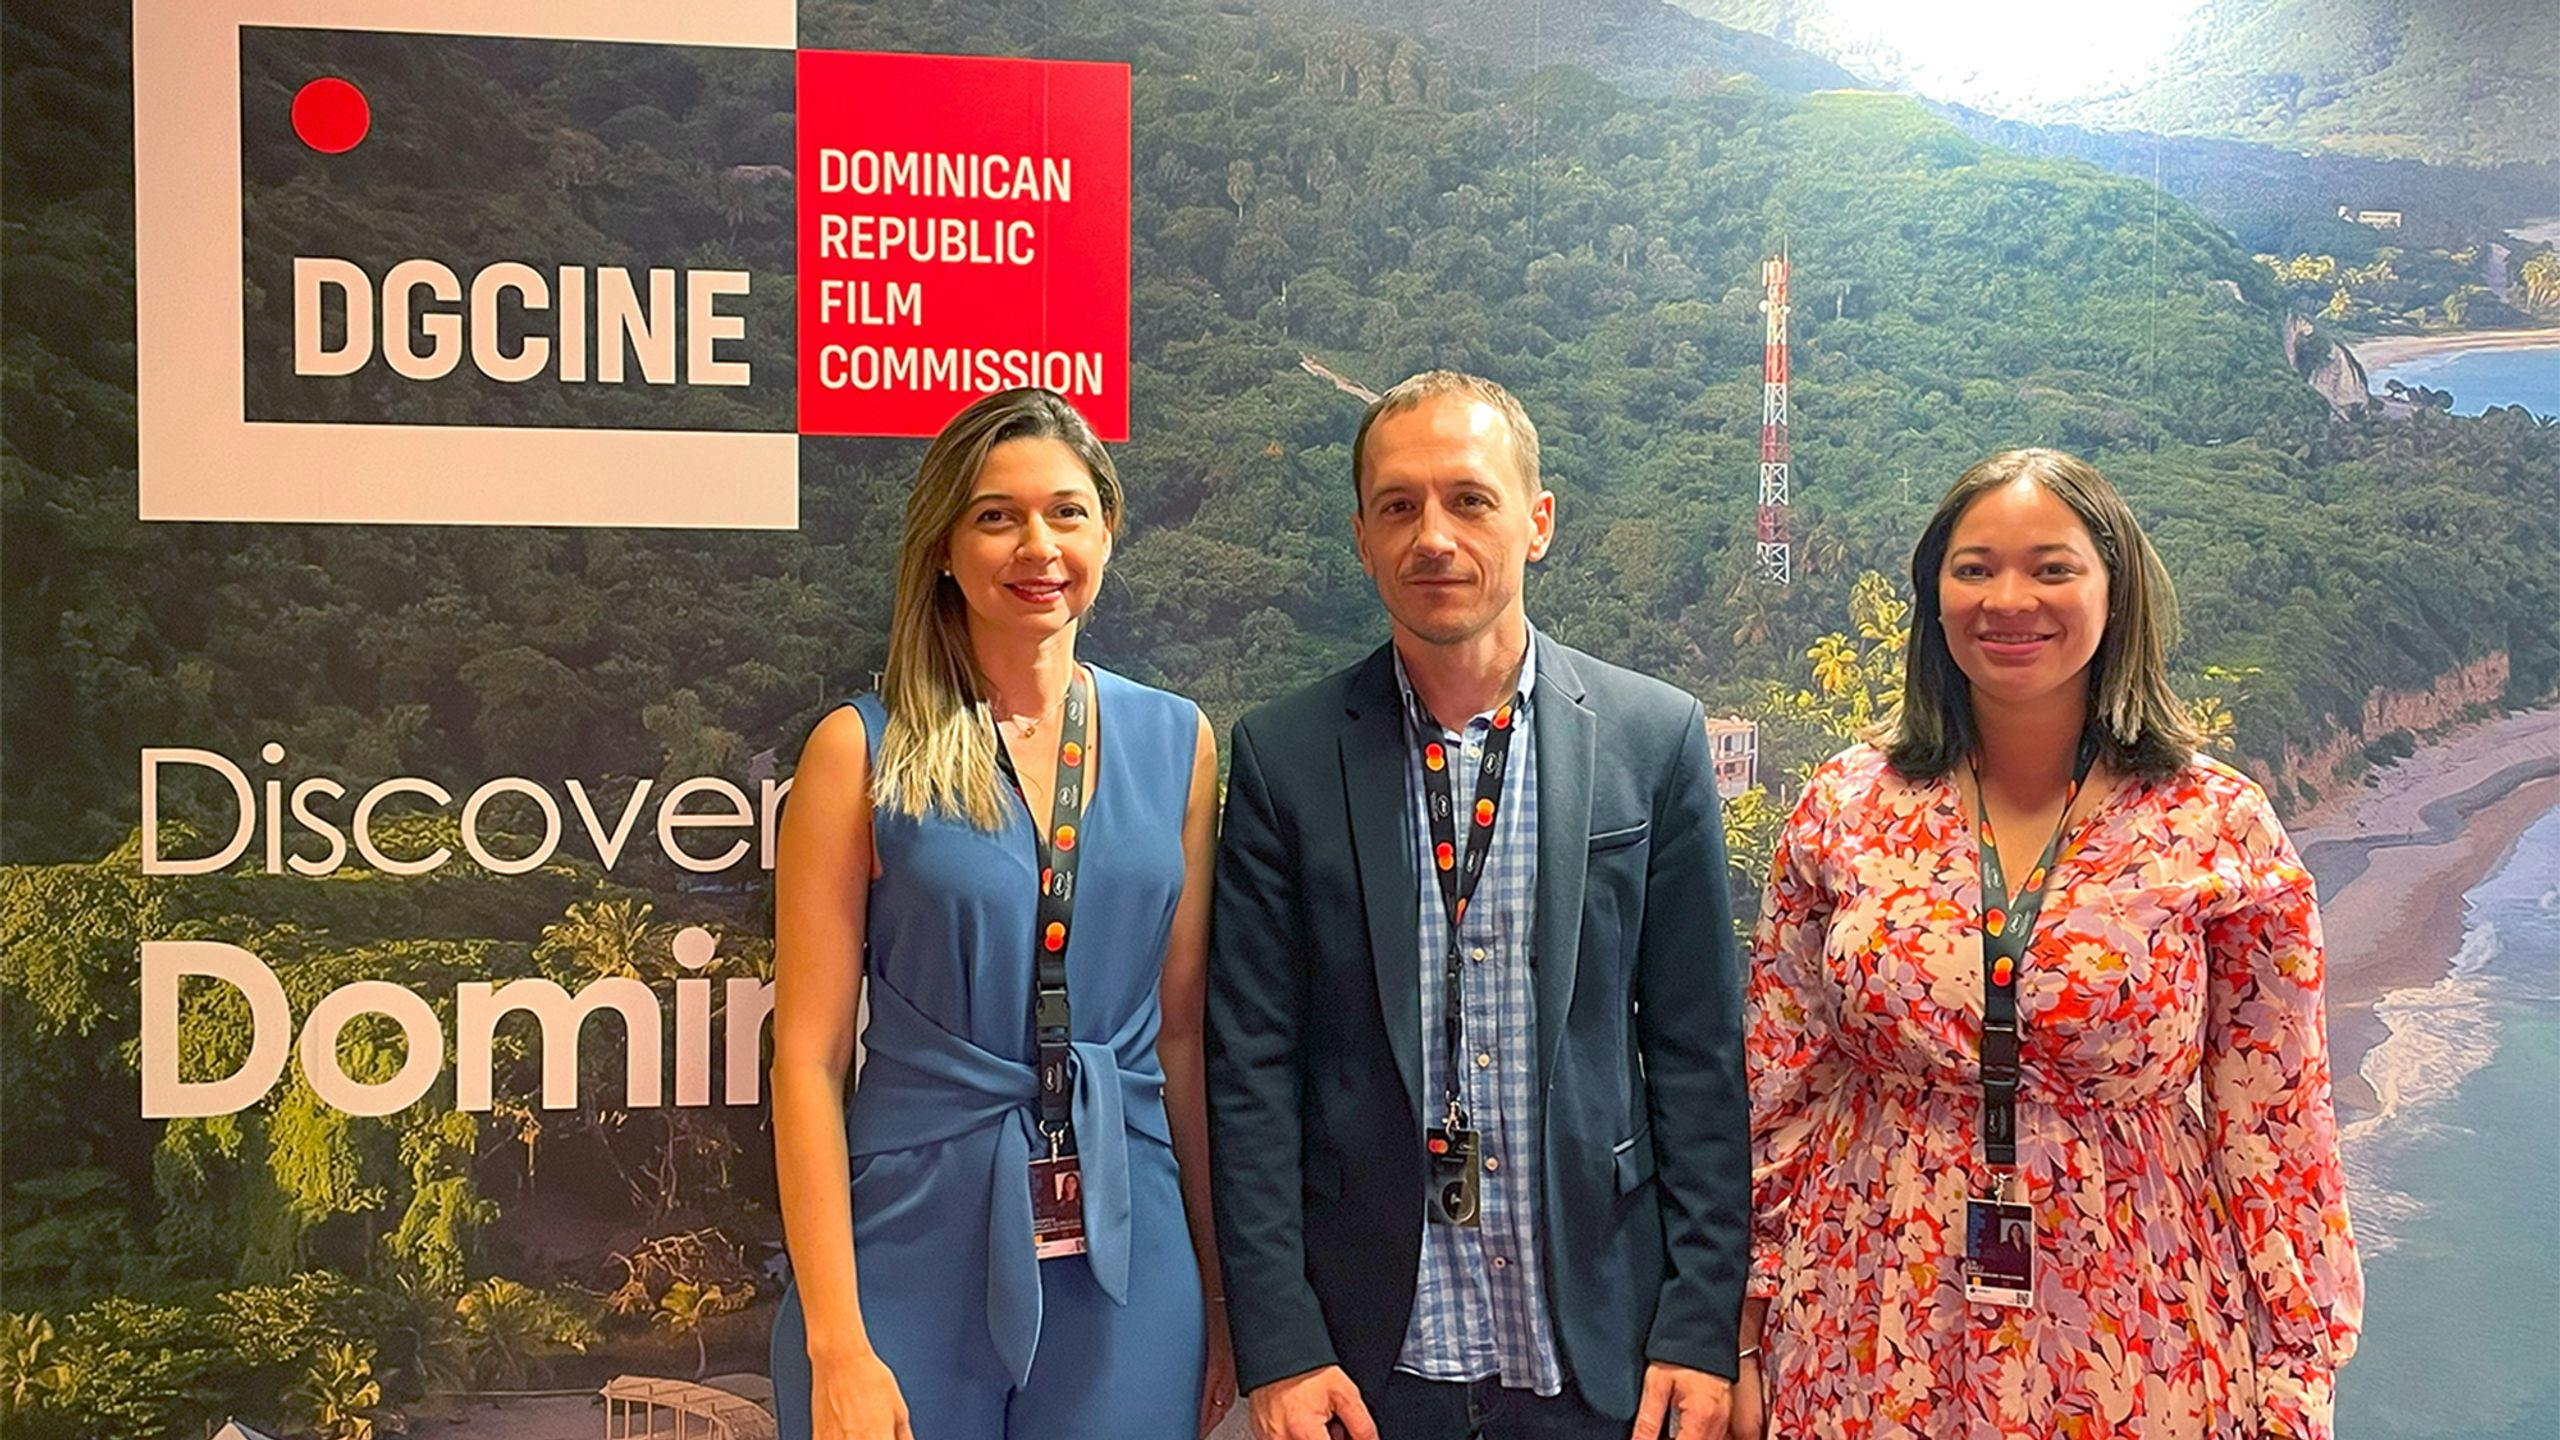 El Festival de Huelva y la Dirección General de Cine de la República Dominicana firman un acuerdo de dos años